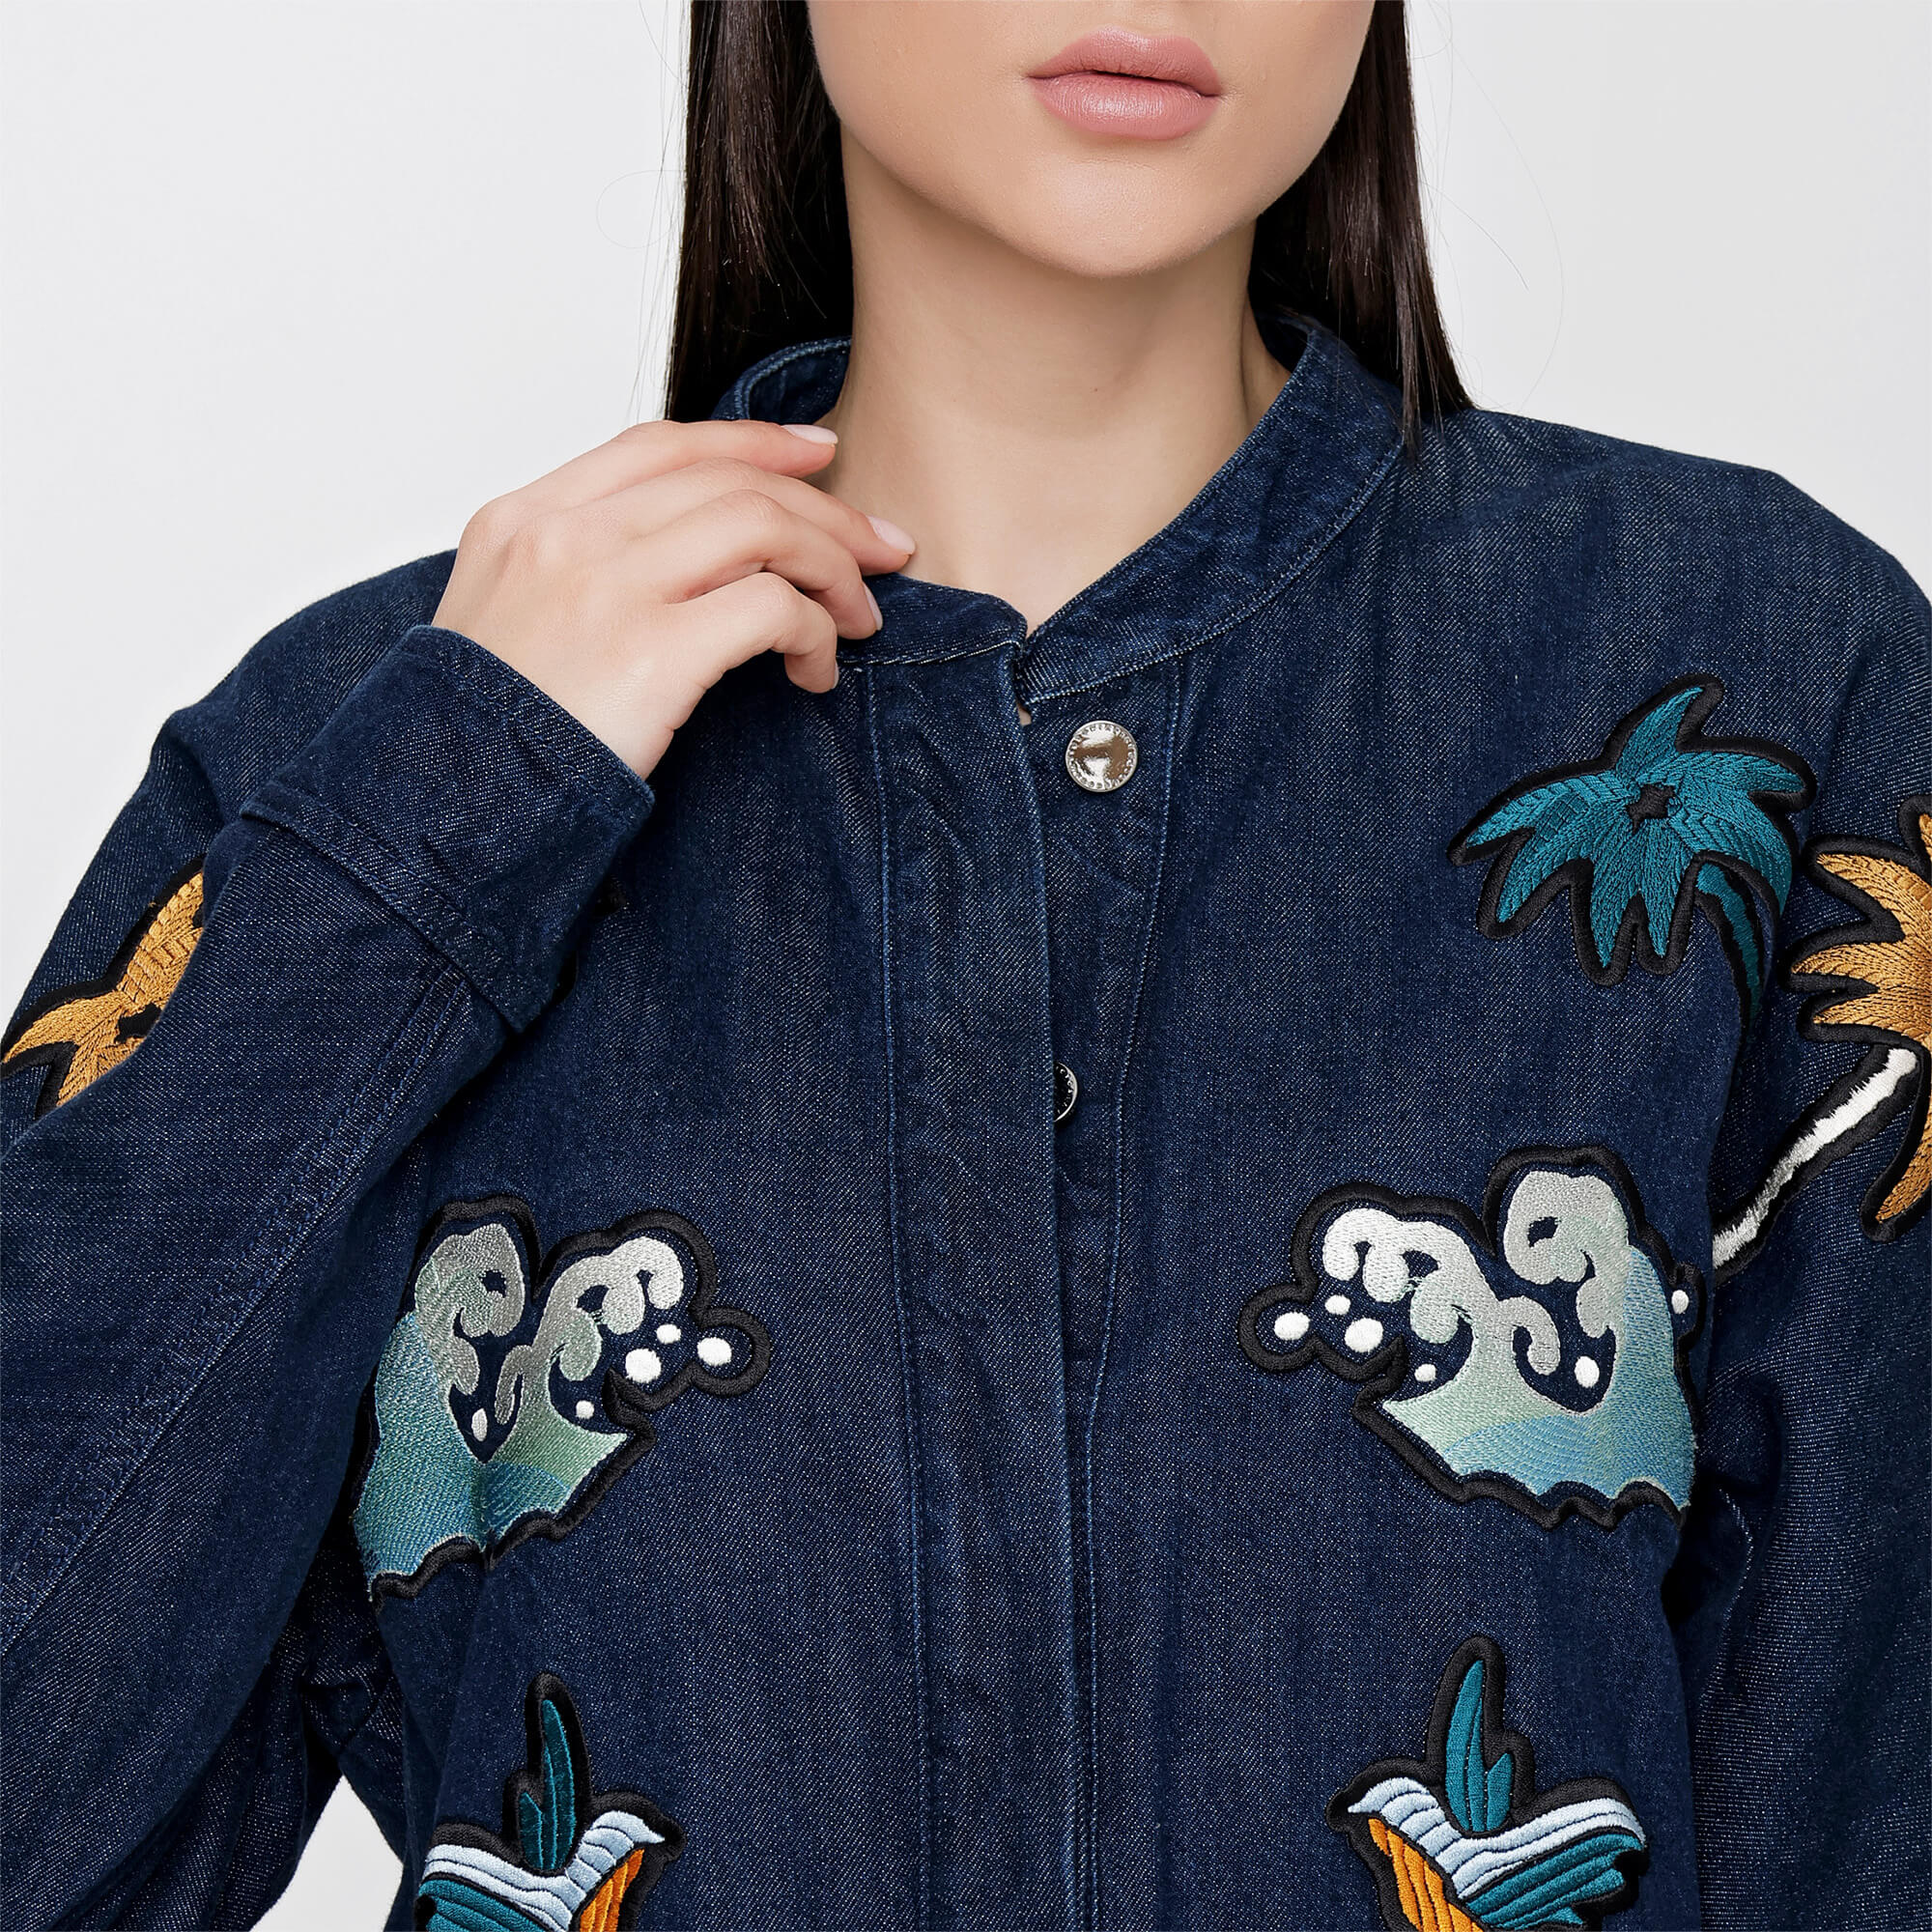 Victoria Beckham - Denim Bird Embroidery Jacket